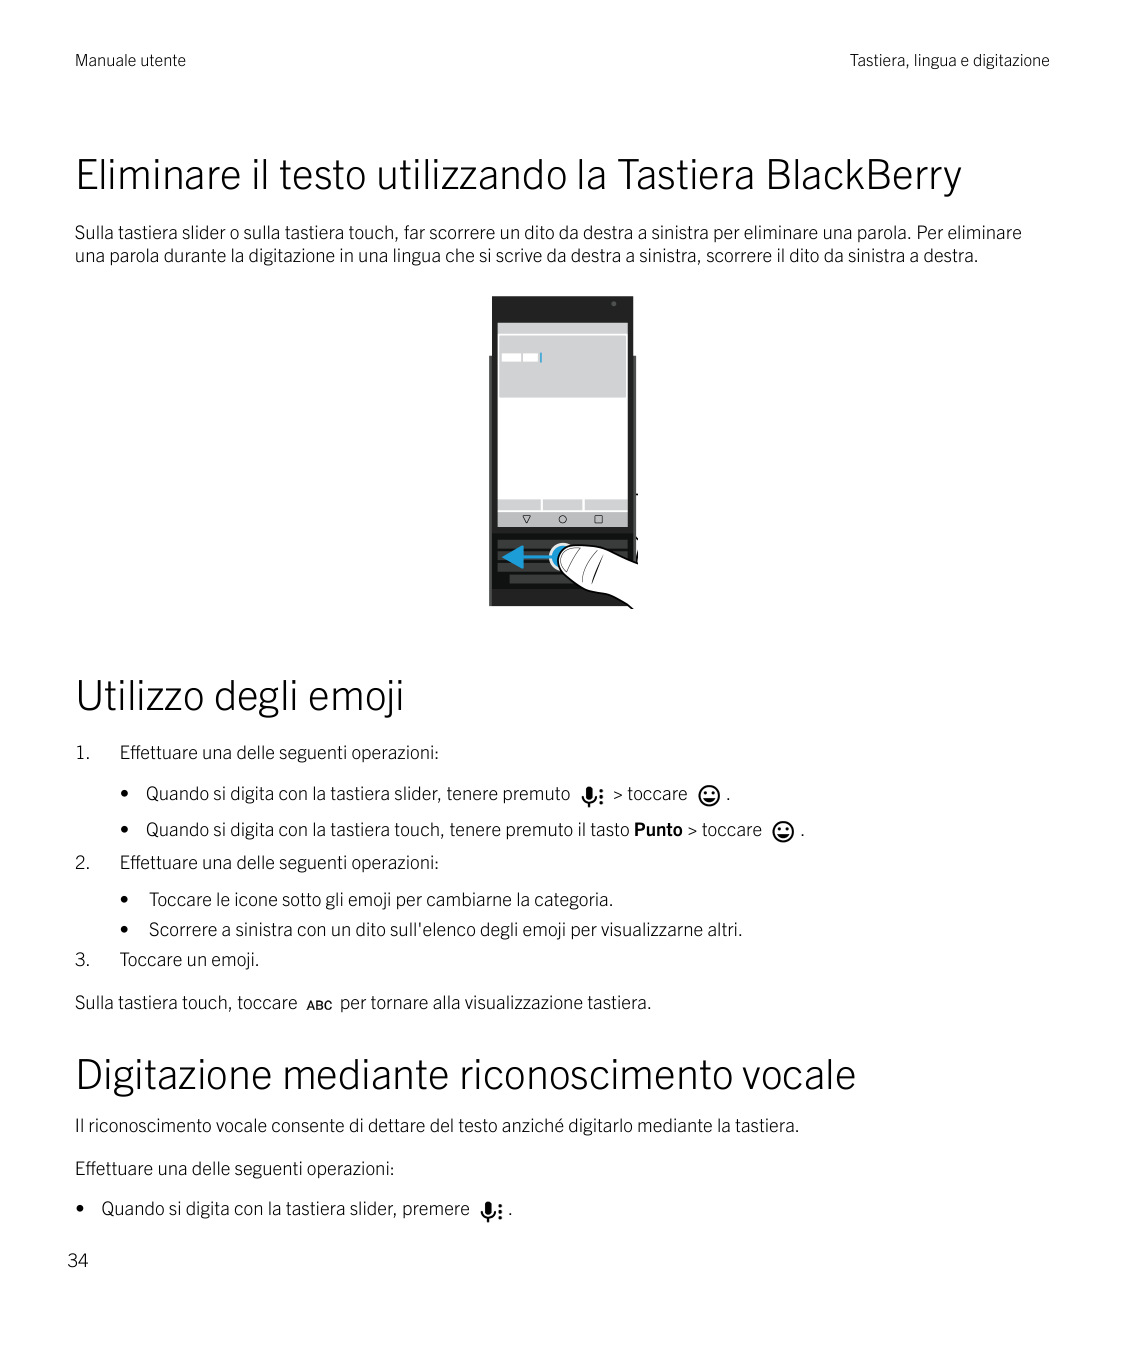 Manuale utenteTastiera, lingua e digitazioneEliminare il testo utilizzando la Tastiera BlackBerrySulla tastiera slider o sulla t